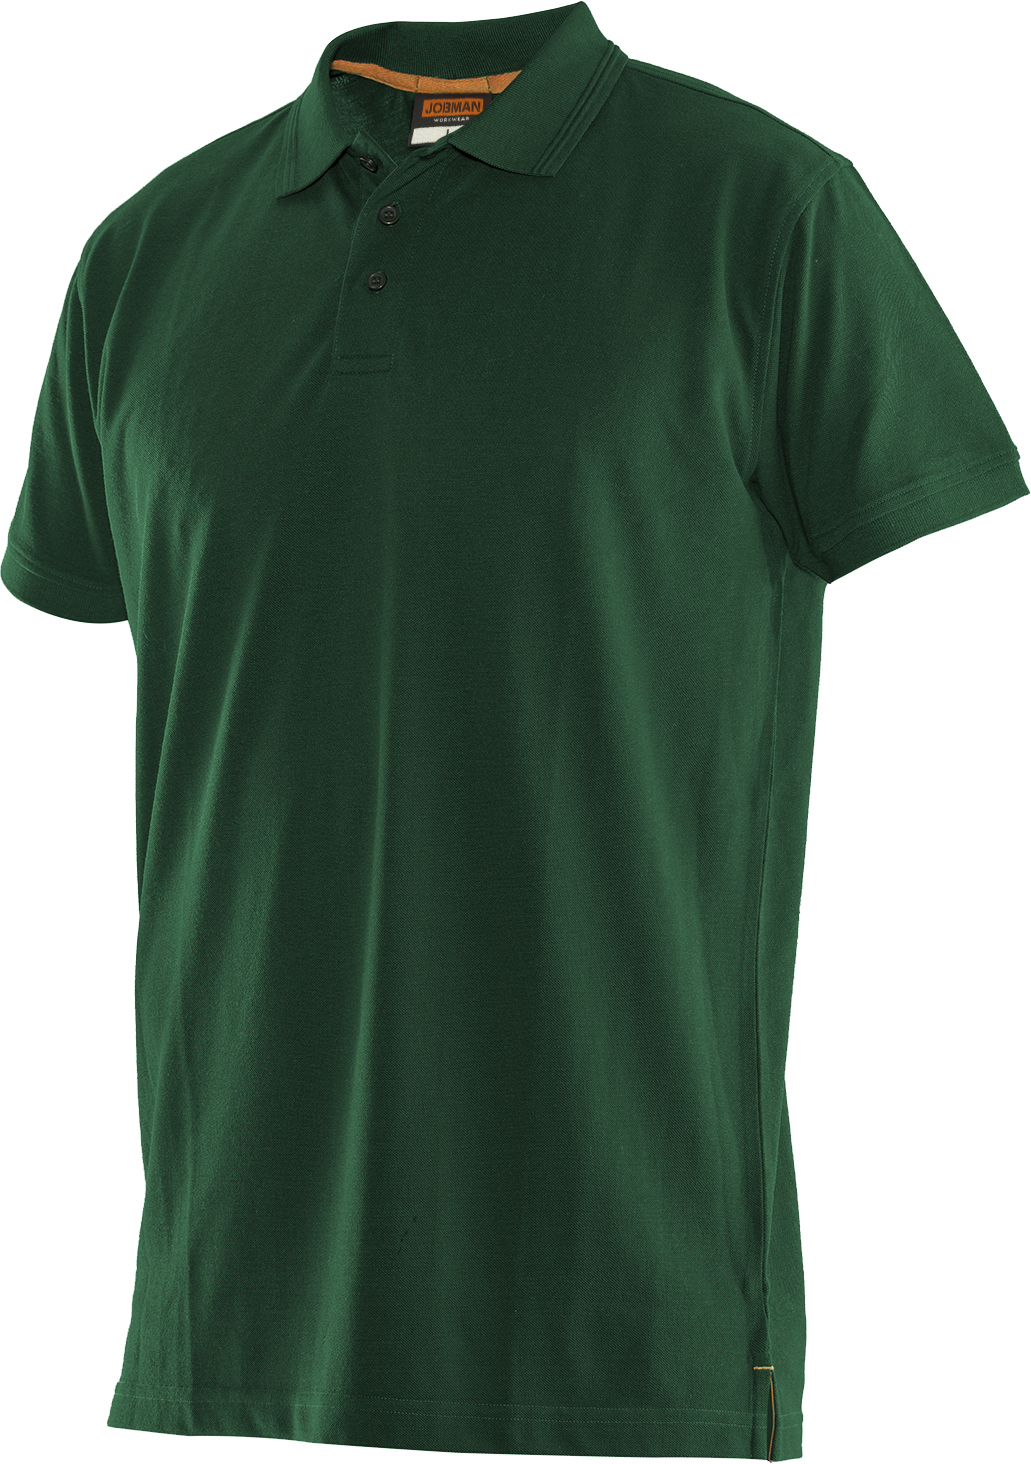 5564 T-shirt polo L vert forêt